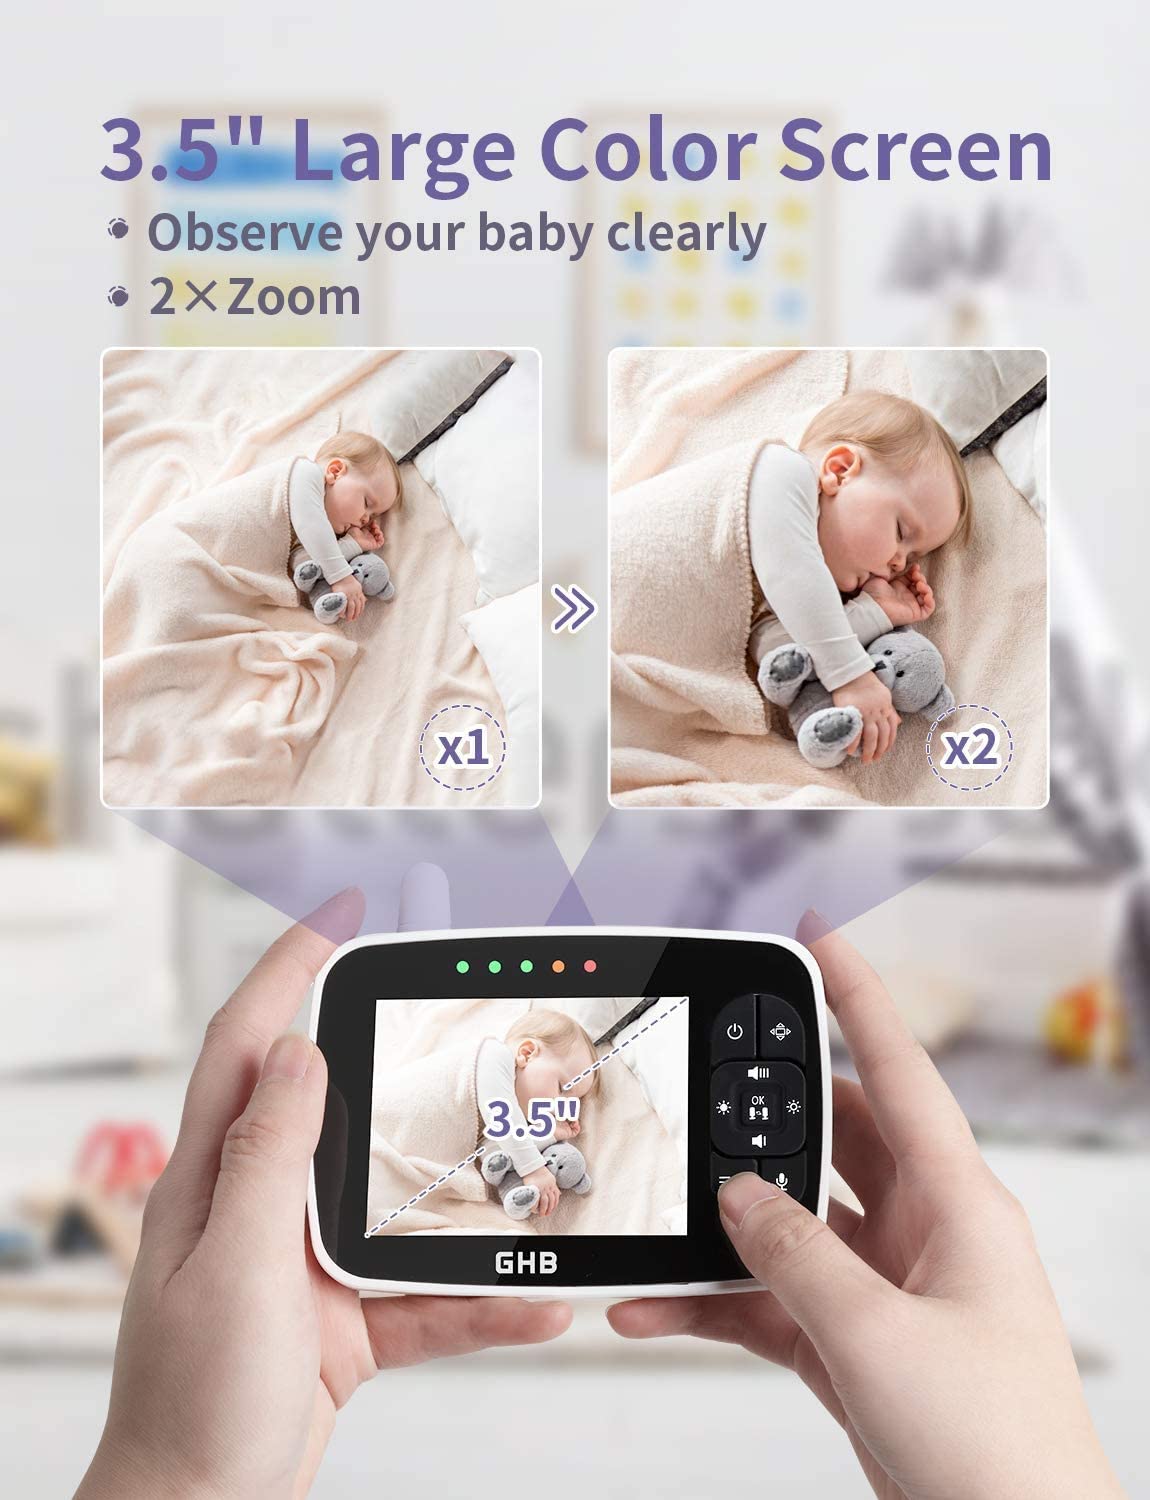 GHB Babyphone Caméra Bébé Moniteur – TumiaStore